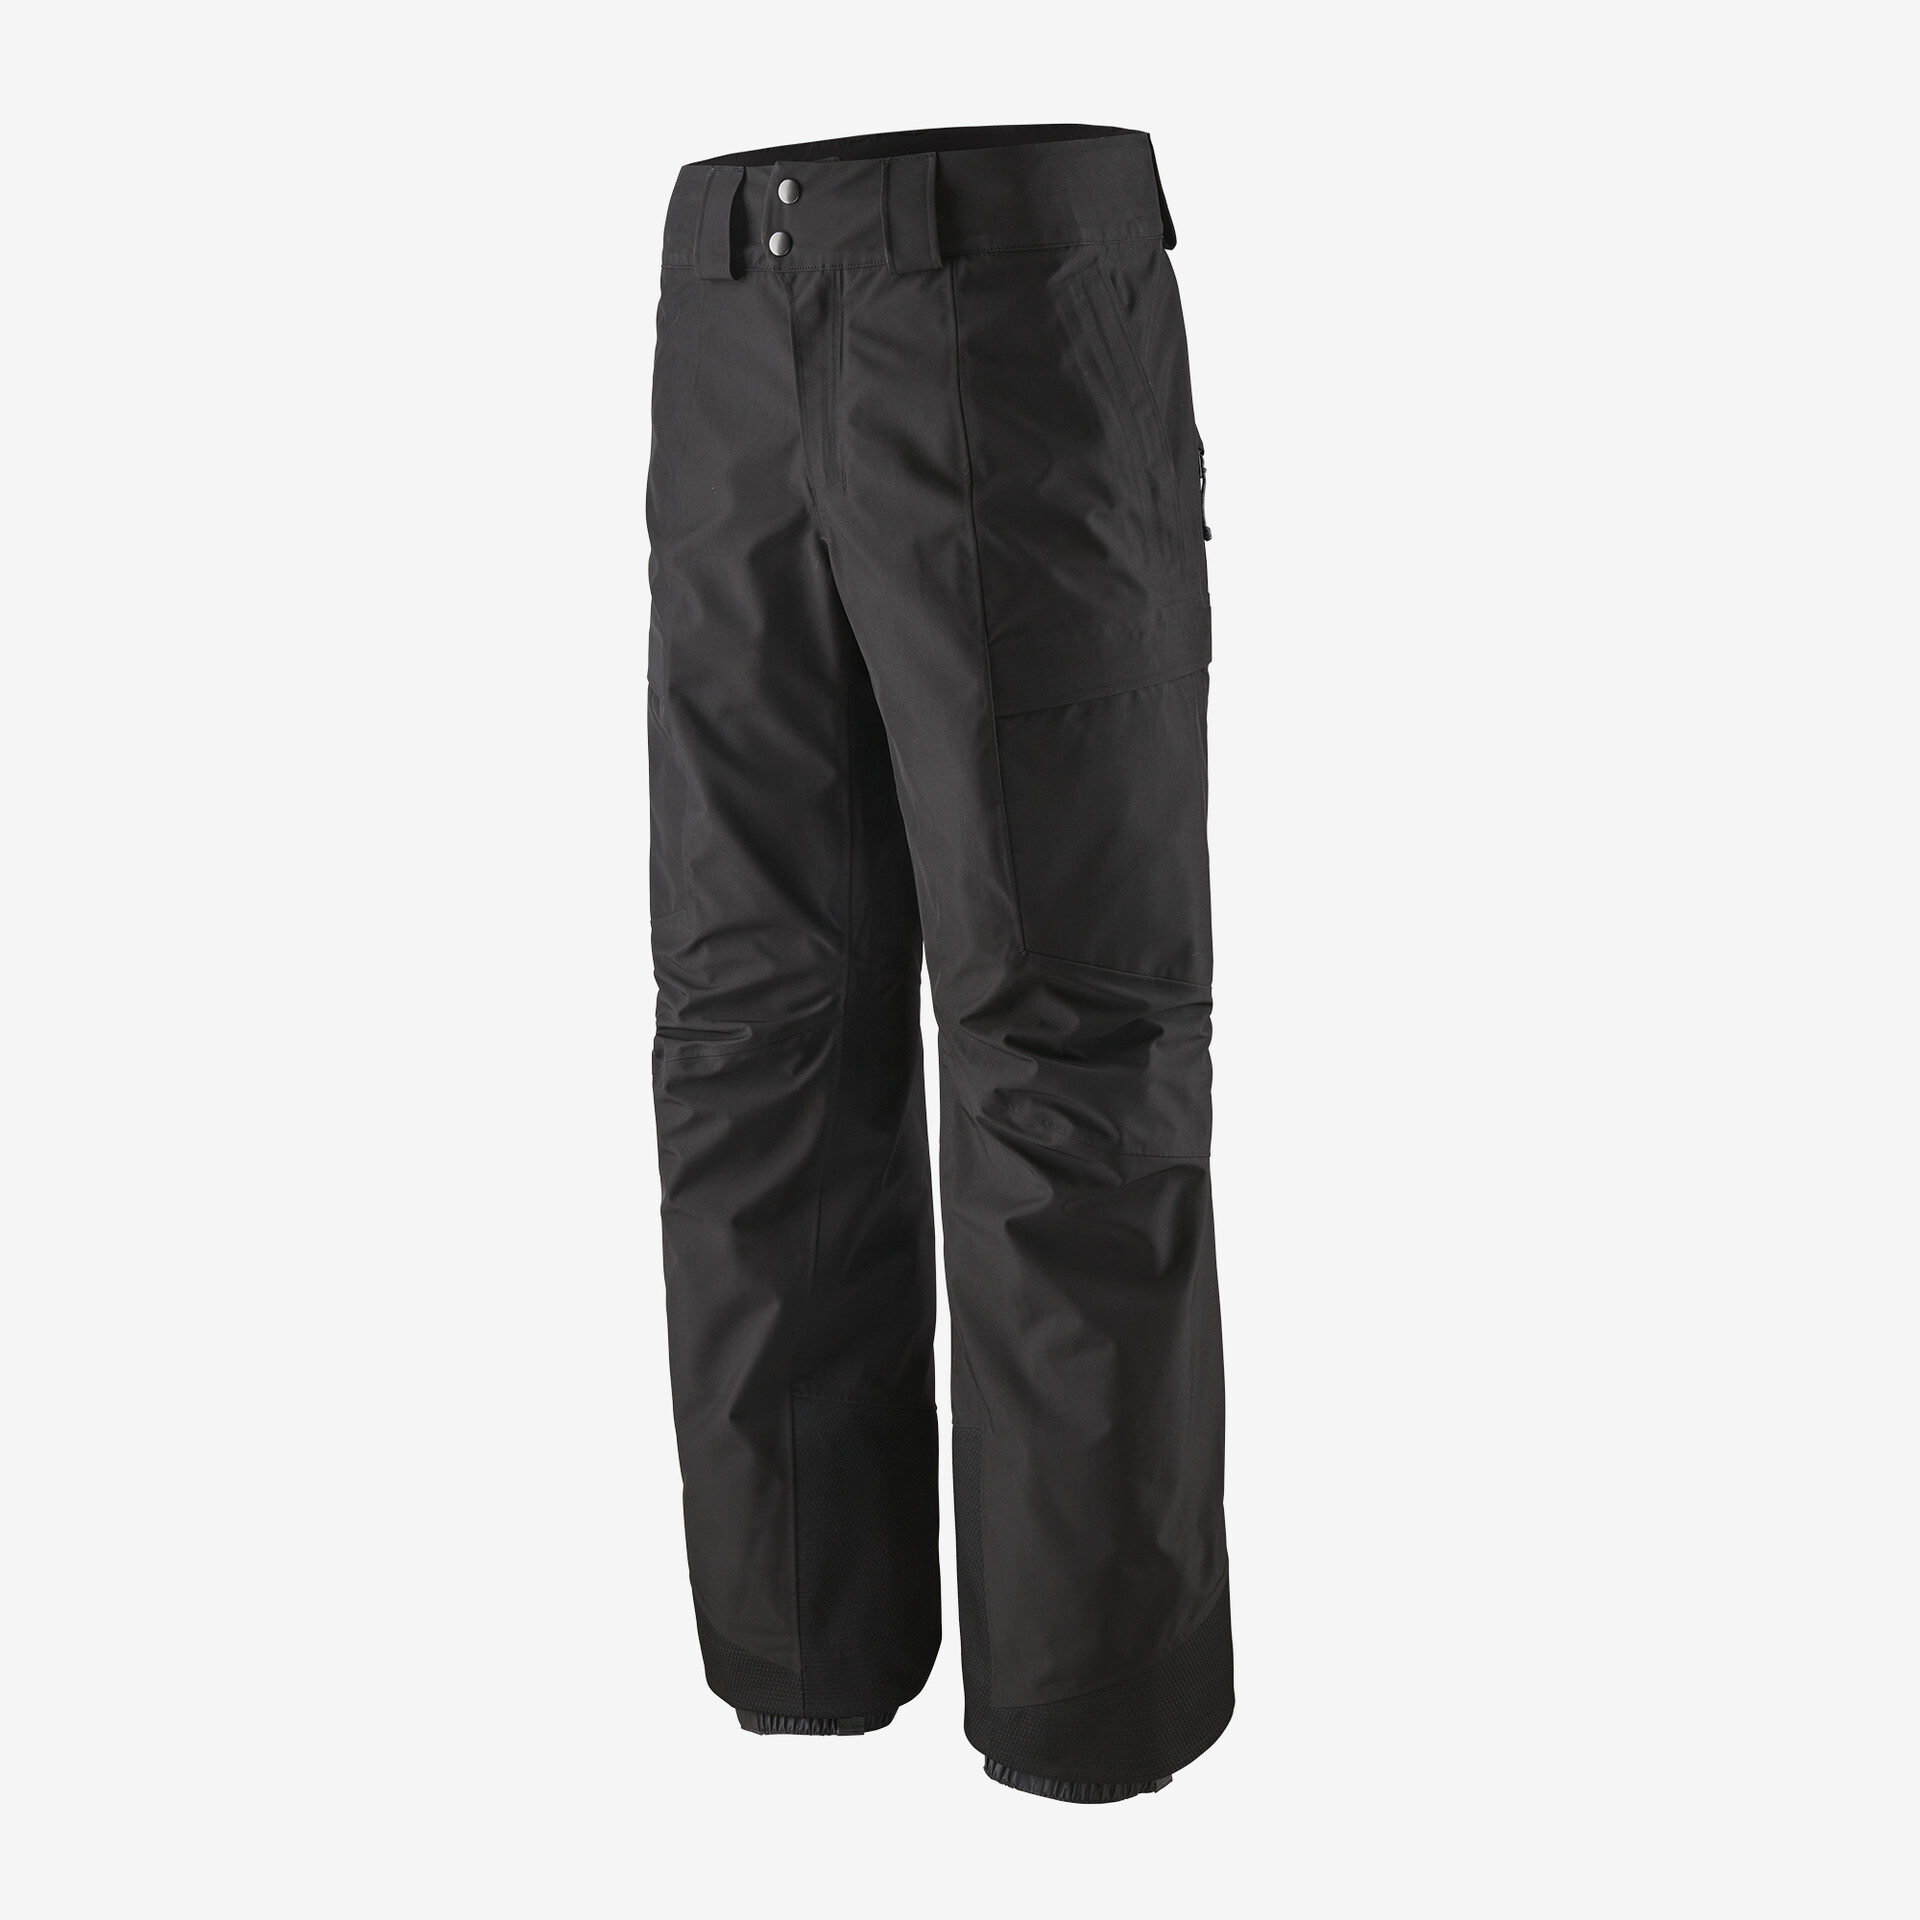 Мужские брюки Storm Shift Patagonia, цвет Black мужские брюки storm shift patagonia мус коричневый